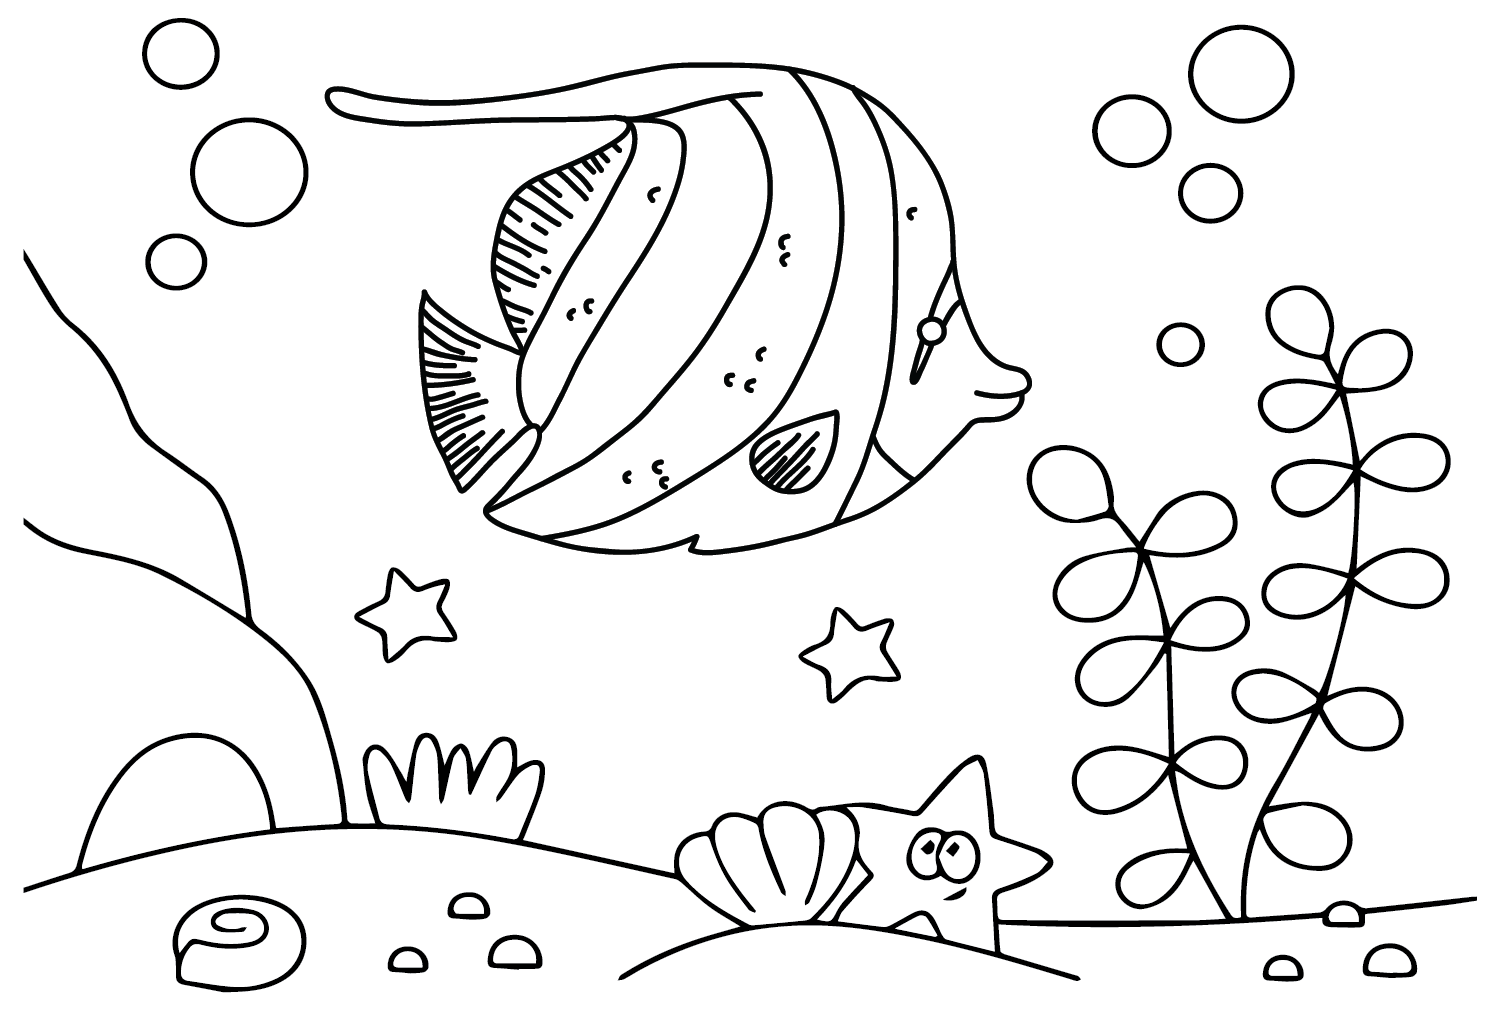 Pennant Coralfish-Farbblätter von Pennant Coralfish